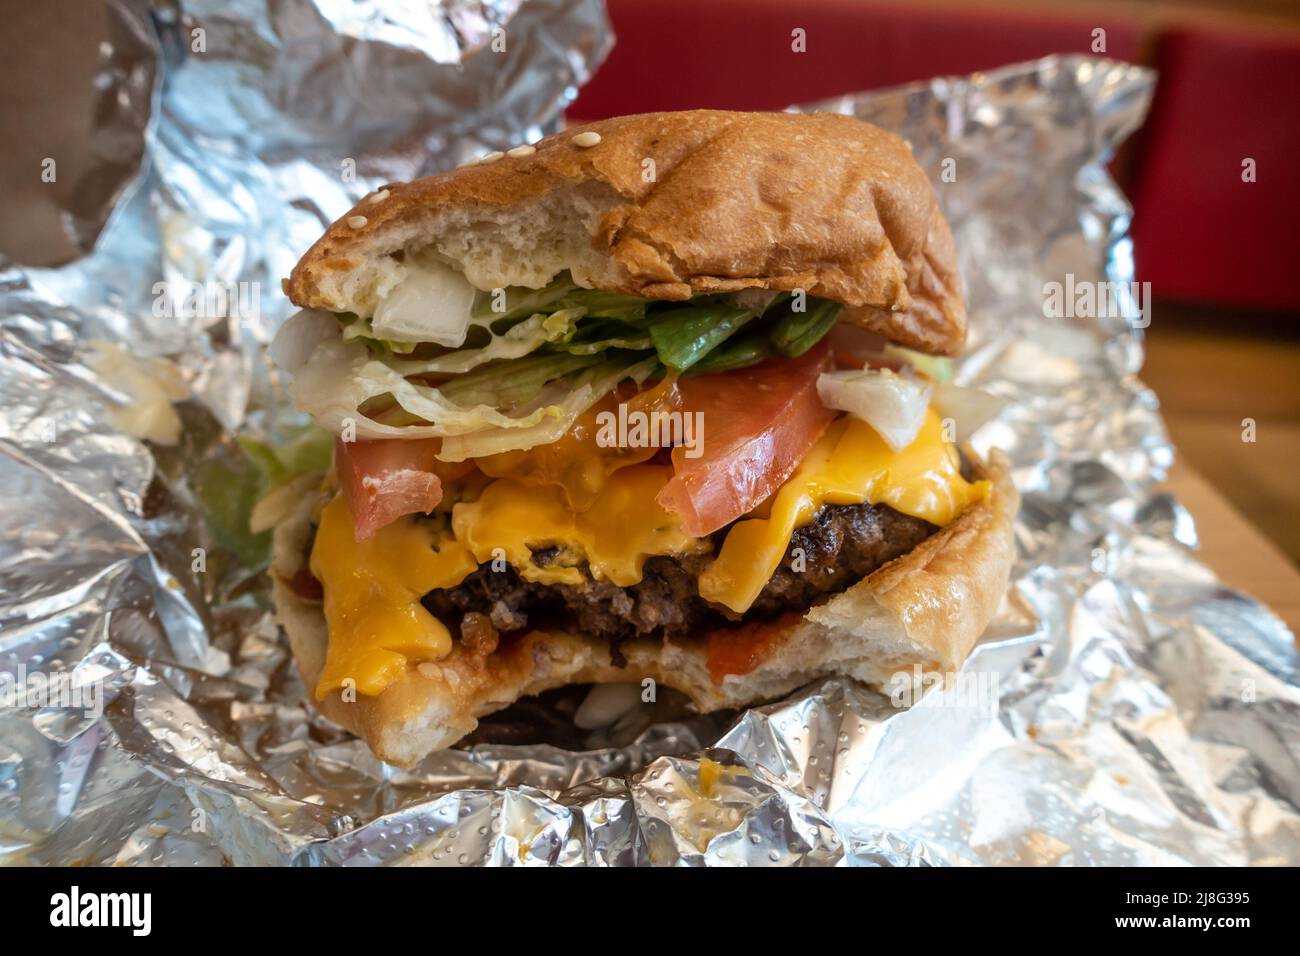 Un cheeseburger in un ristorante fast food con uno spuntino, Foto Stock